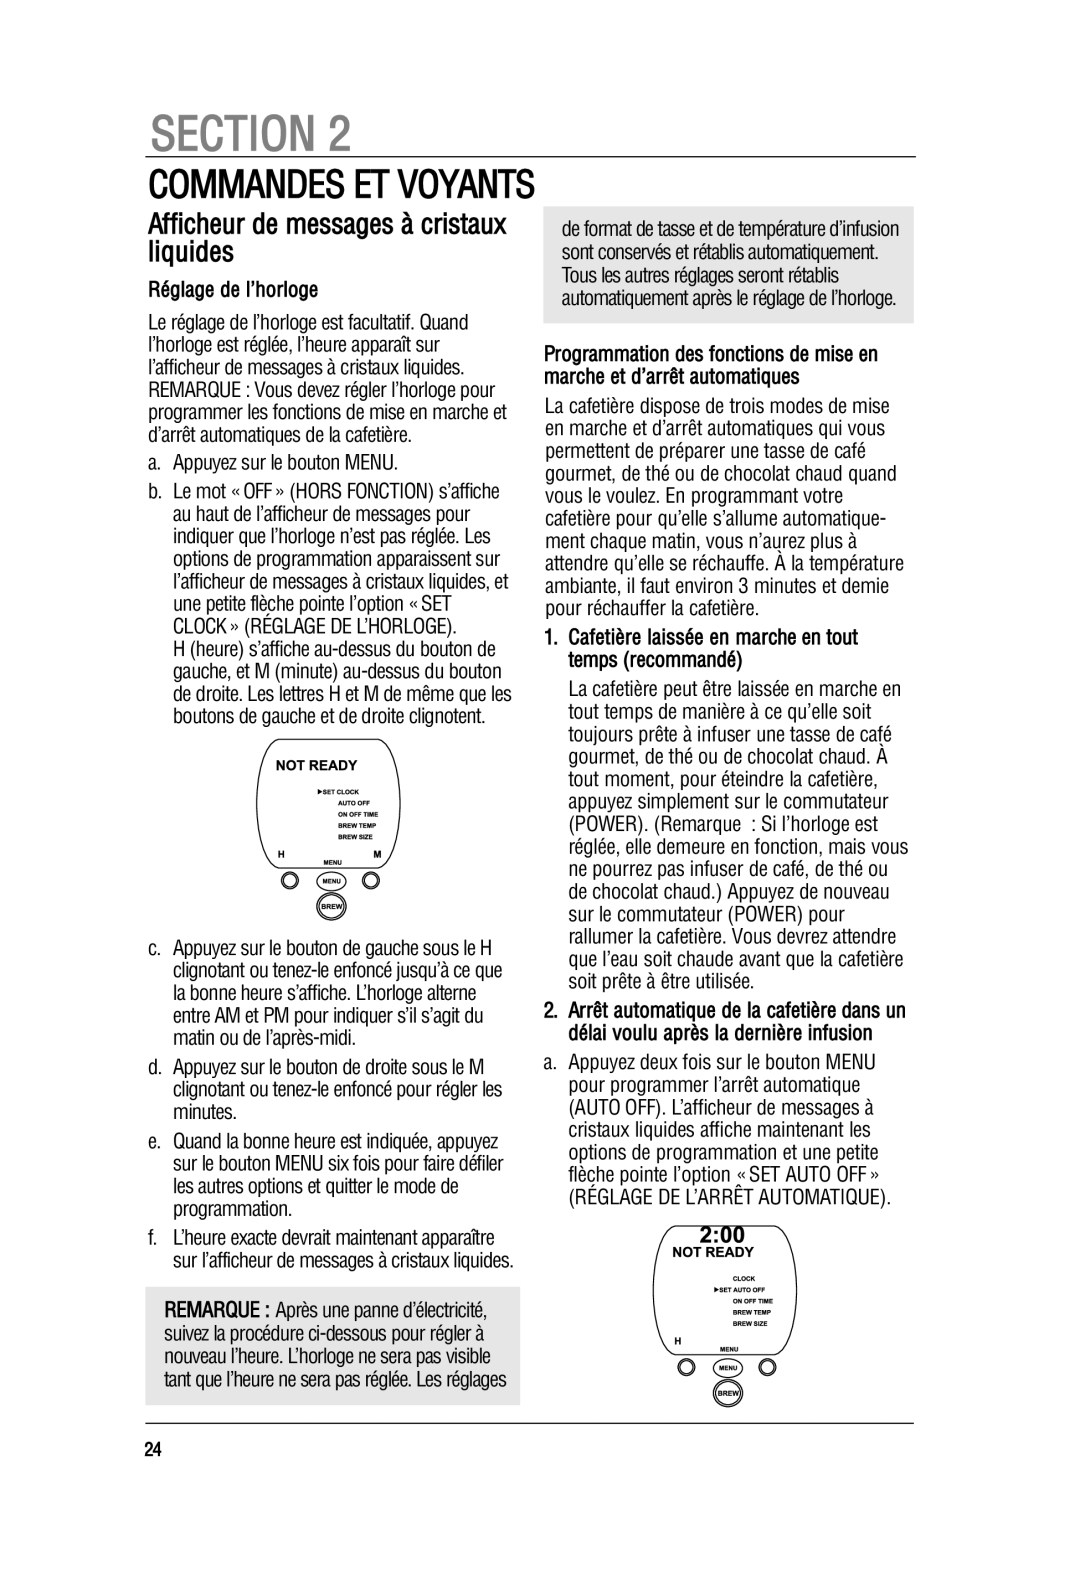 Keurig B70 manual Commandes Et Voyants, Afficheur de messages à cristaux liquides, Réglage de l’horloge, Section 